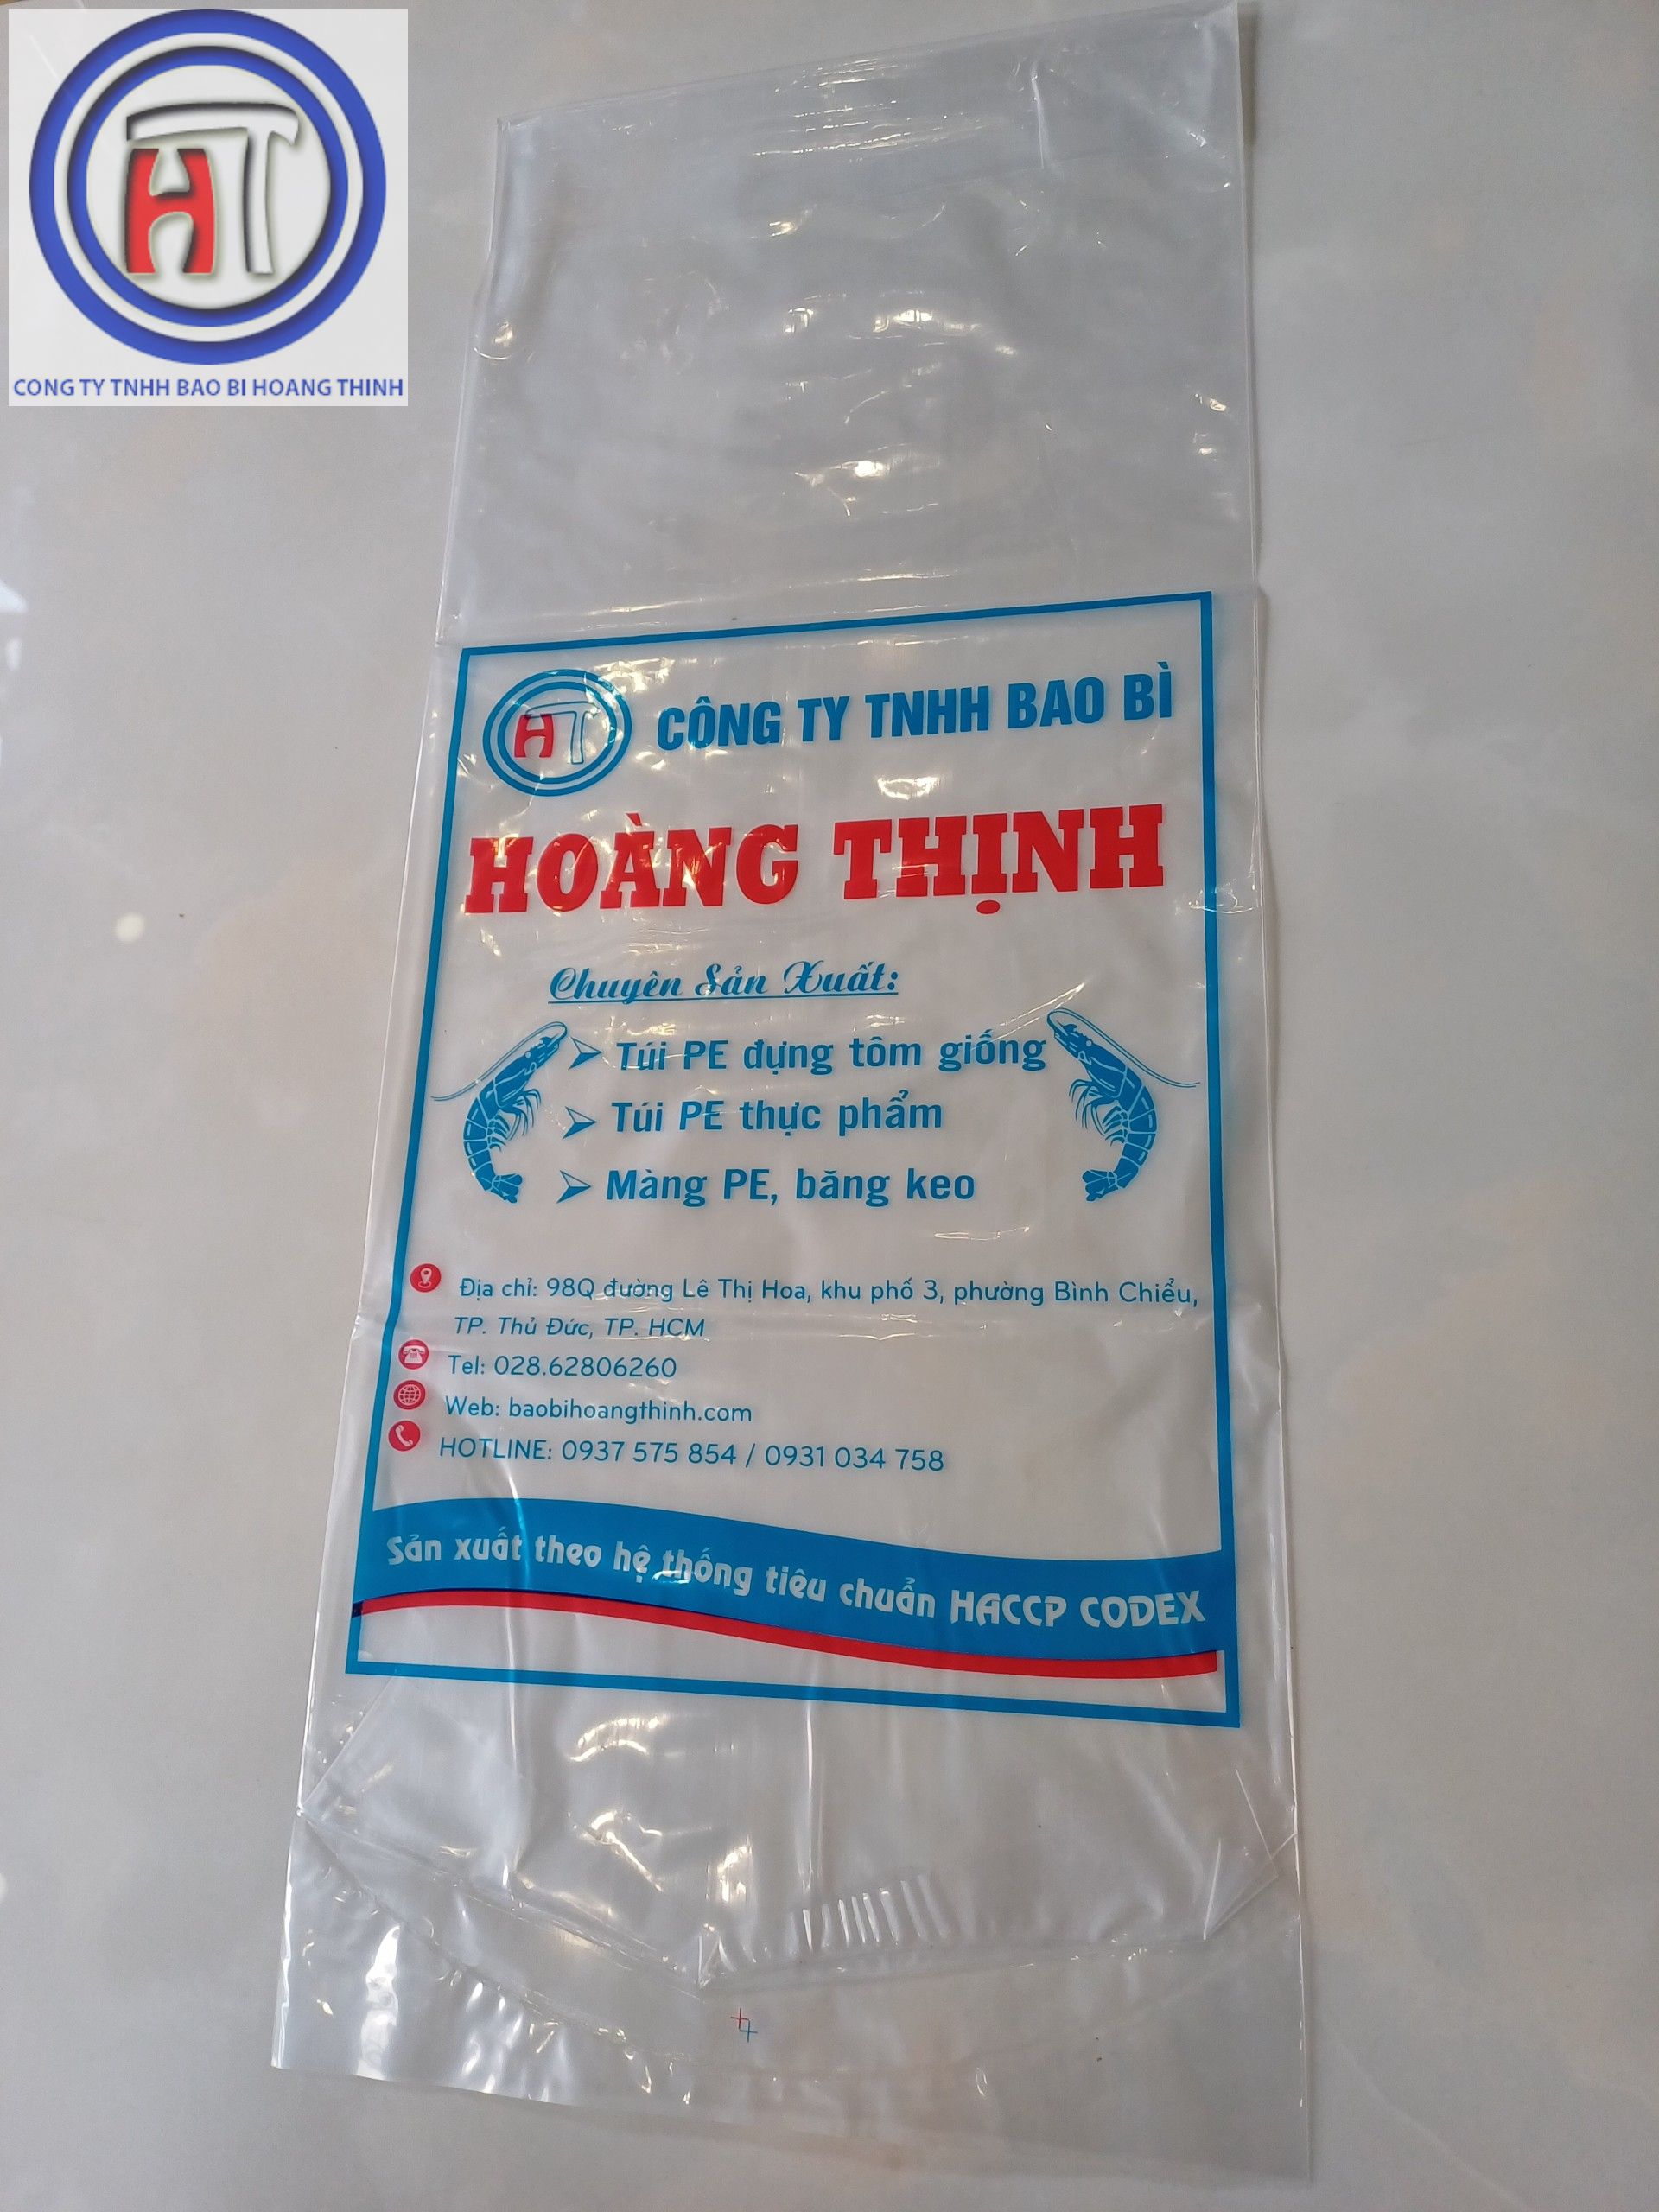 Túi đựng tôm giống, cá giống - Bao Bì Hoàng Thịnh - Công Ty TNHH Bao Bì Hoàng Thịnh